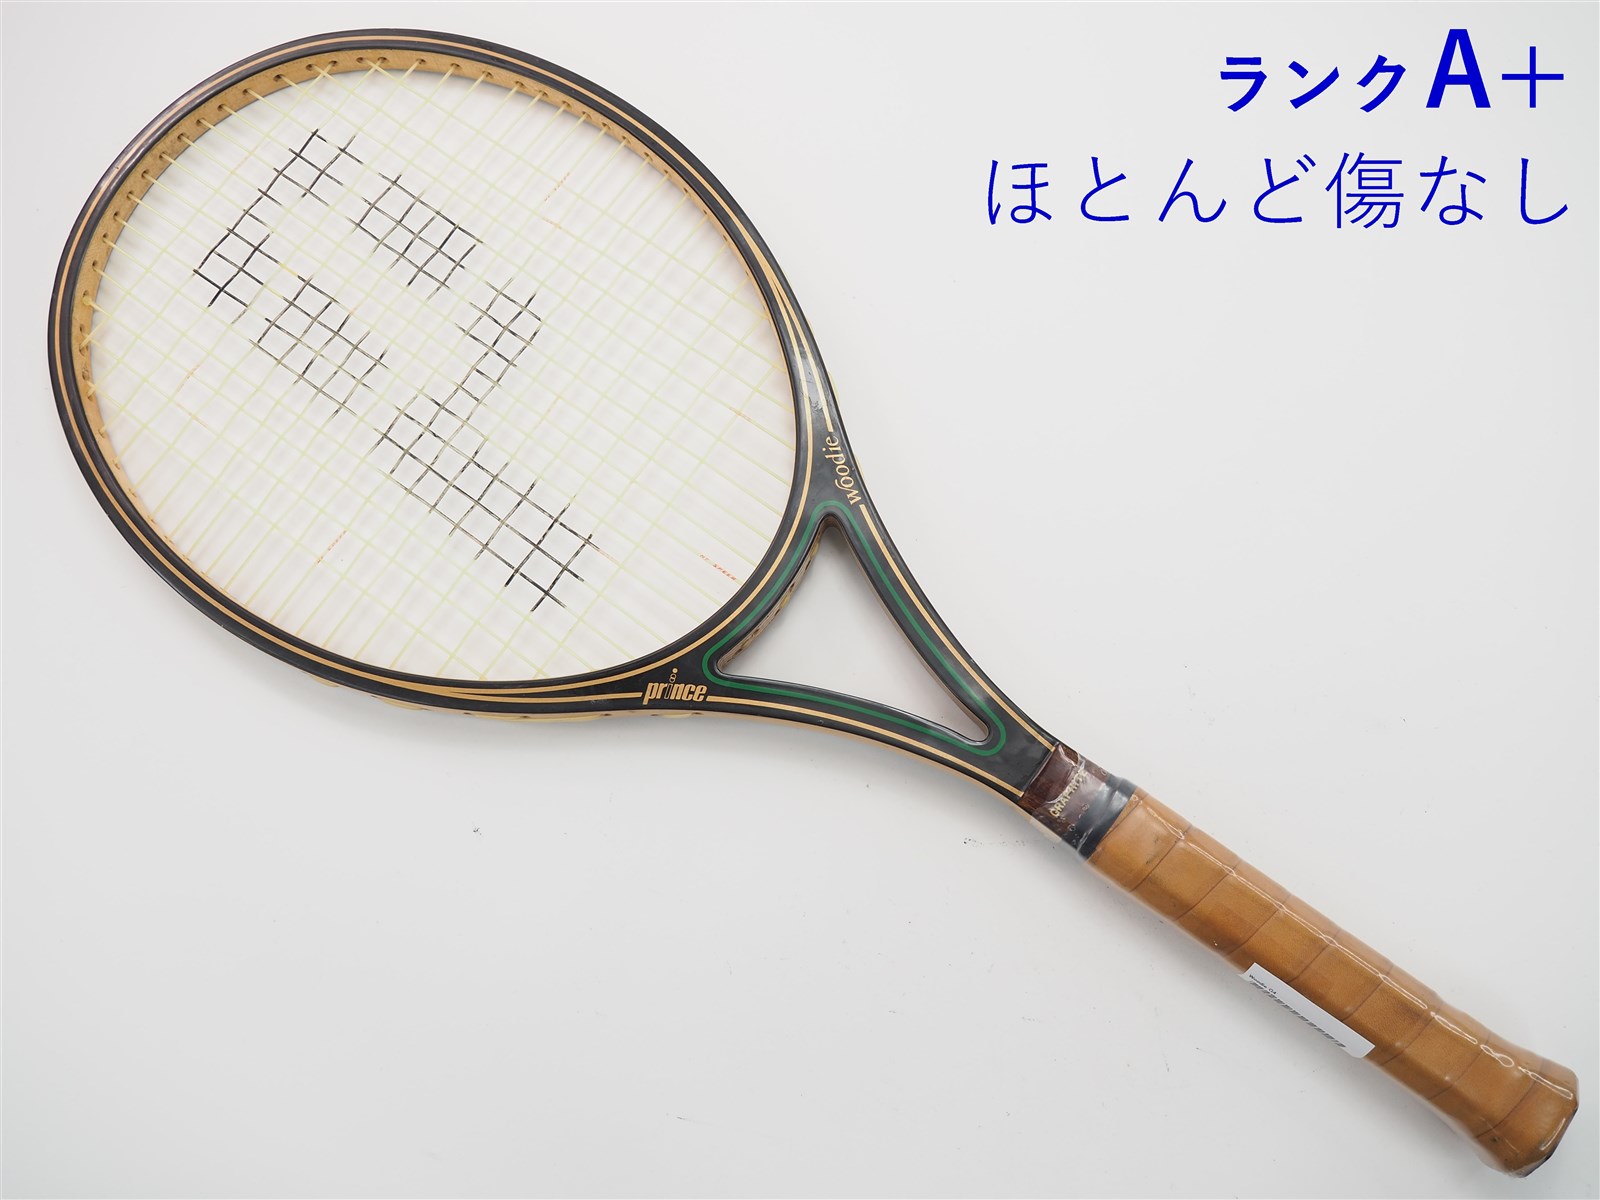 【中古】プリンス ウッディーPRINCE Woodie(G4相当)【中古 テニスラケット】【送料無料】